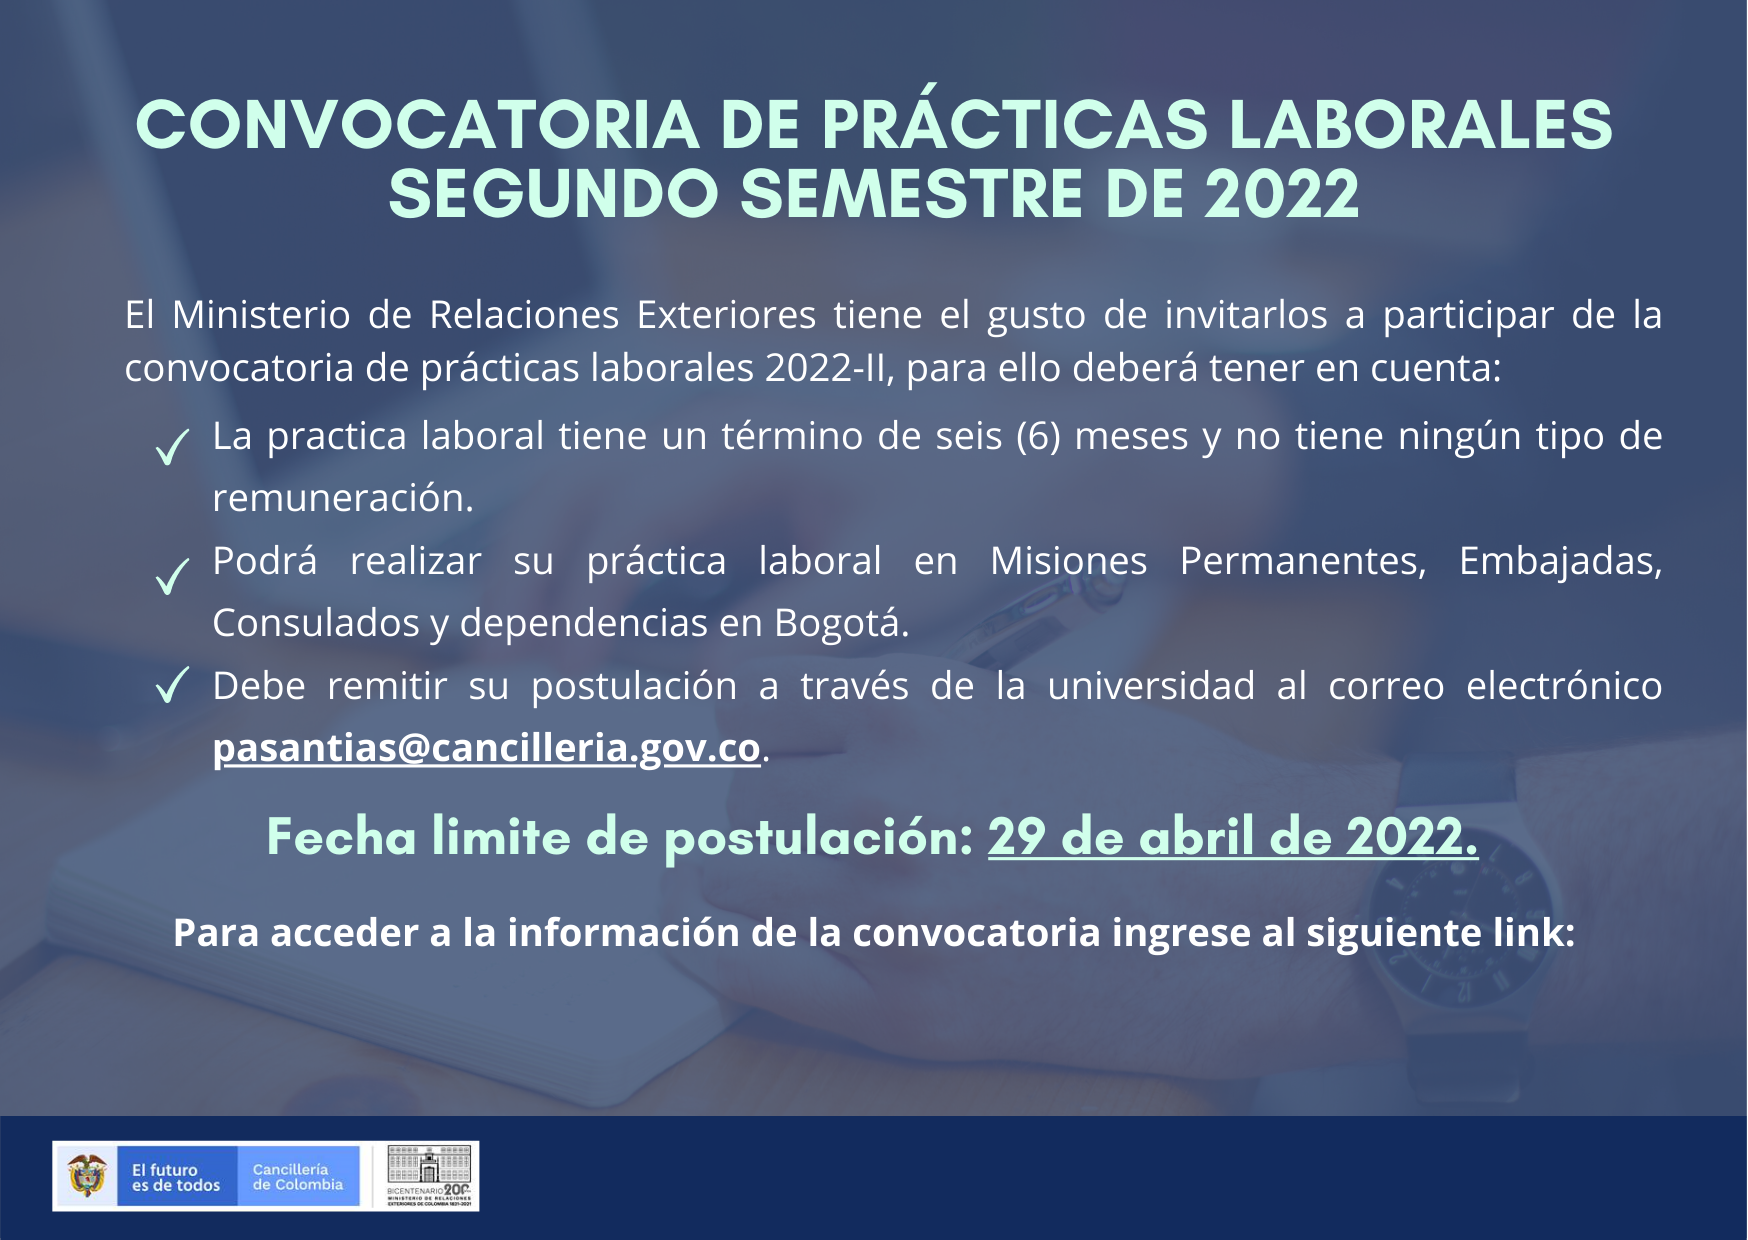 Convocatoria de prácticas laborales para el segundo semestre de 2022